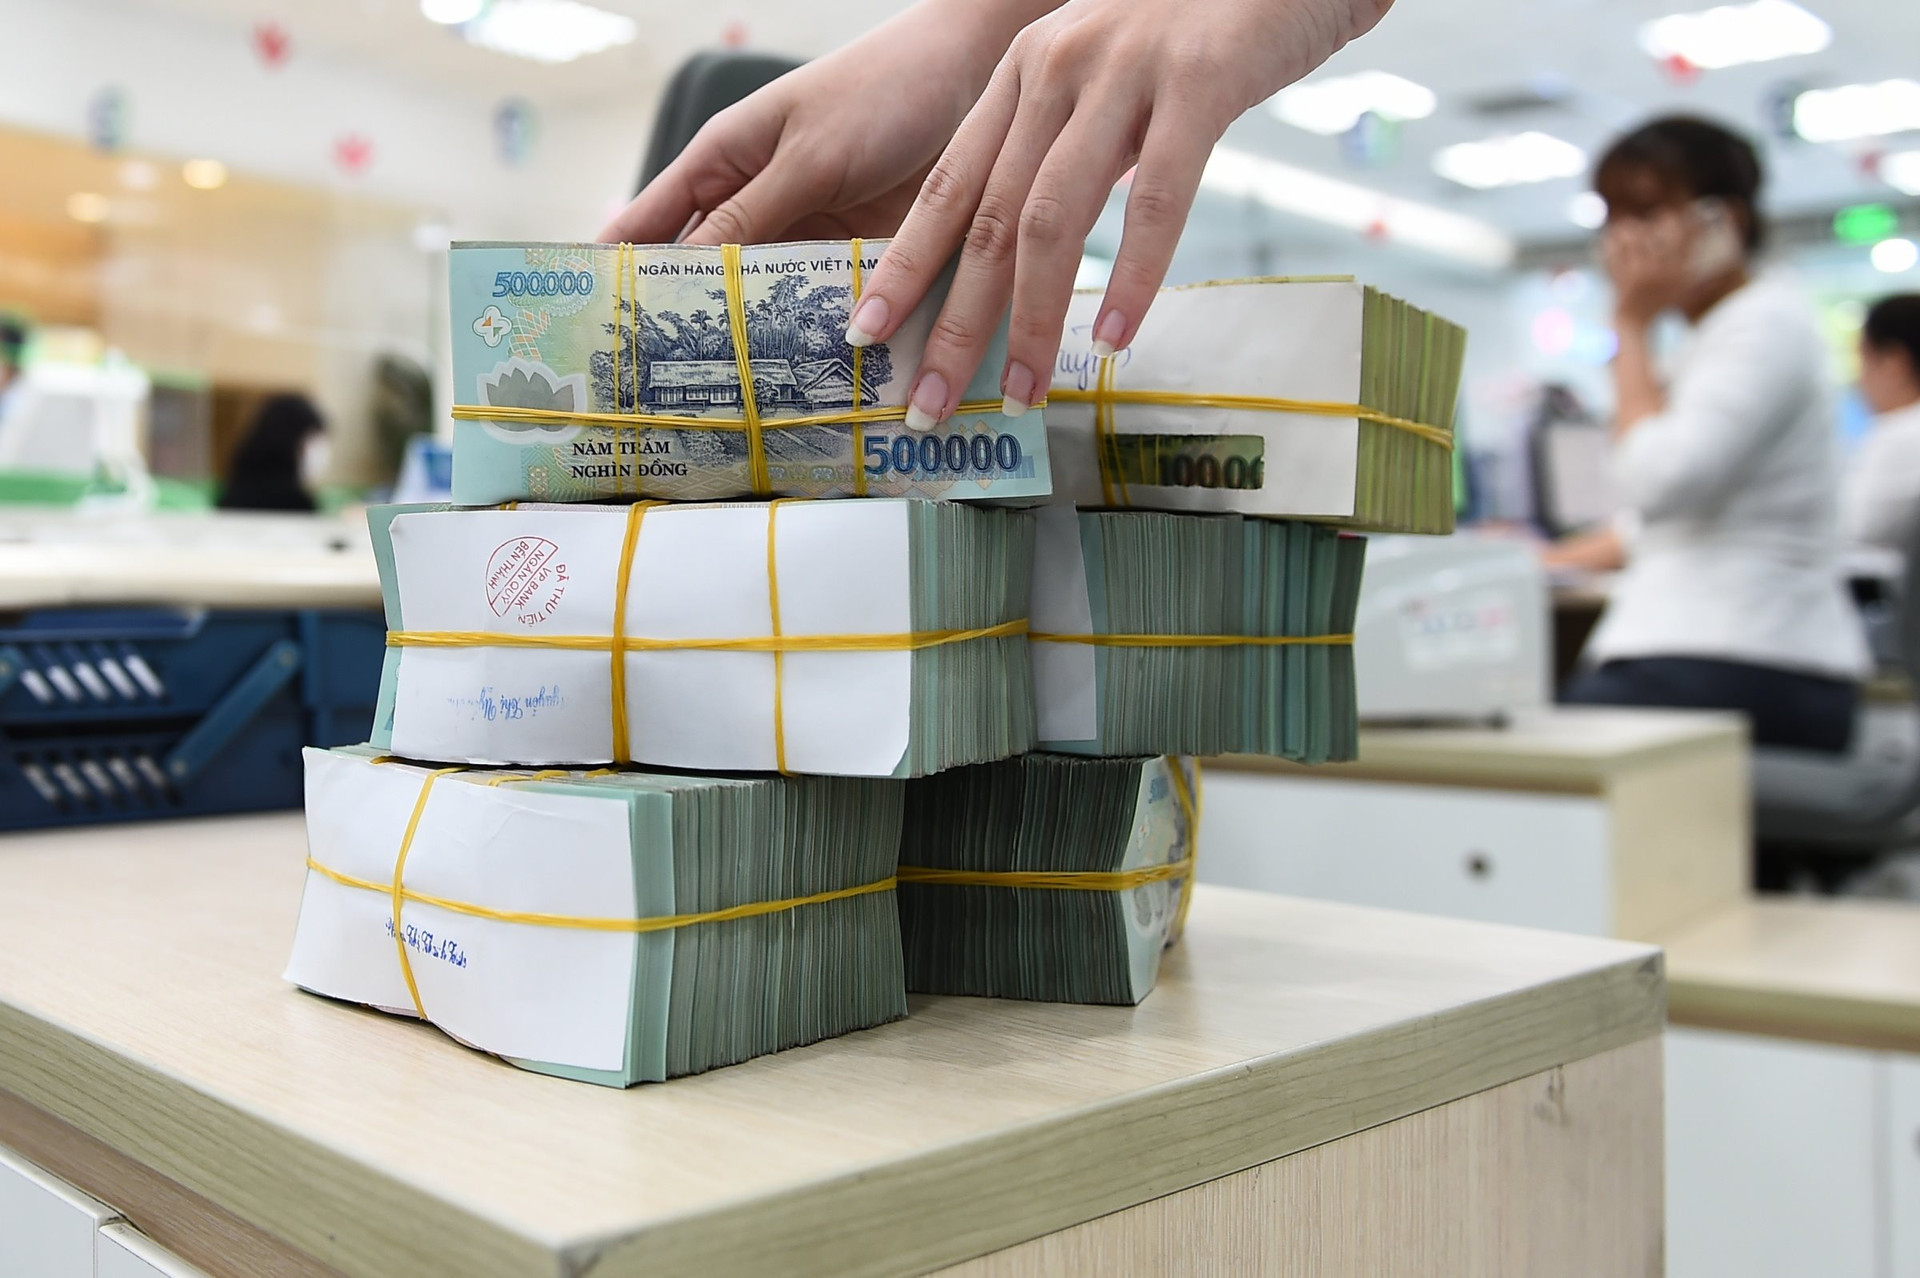 Cận Tết, ngân hàng Agribank rao bán thanh lý loạt bất động sản phía Nam, có tài sản trị giá hàng trăm tỉ đồng - Ảnh 2.